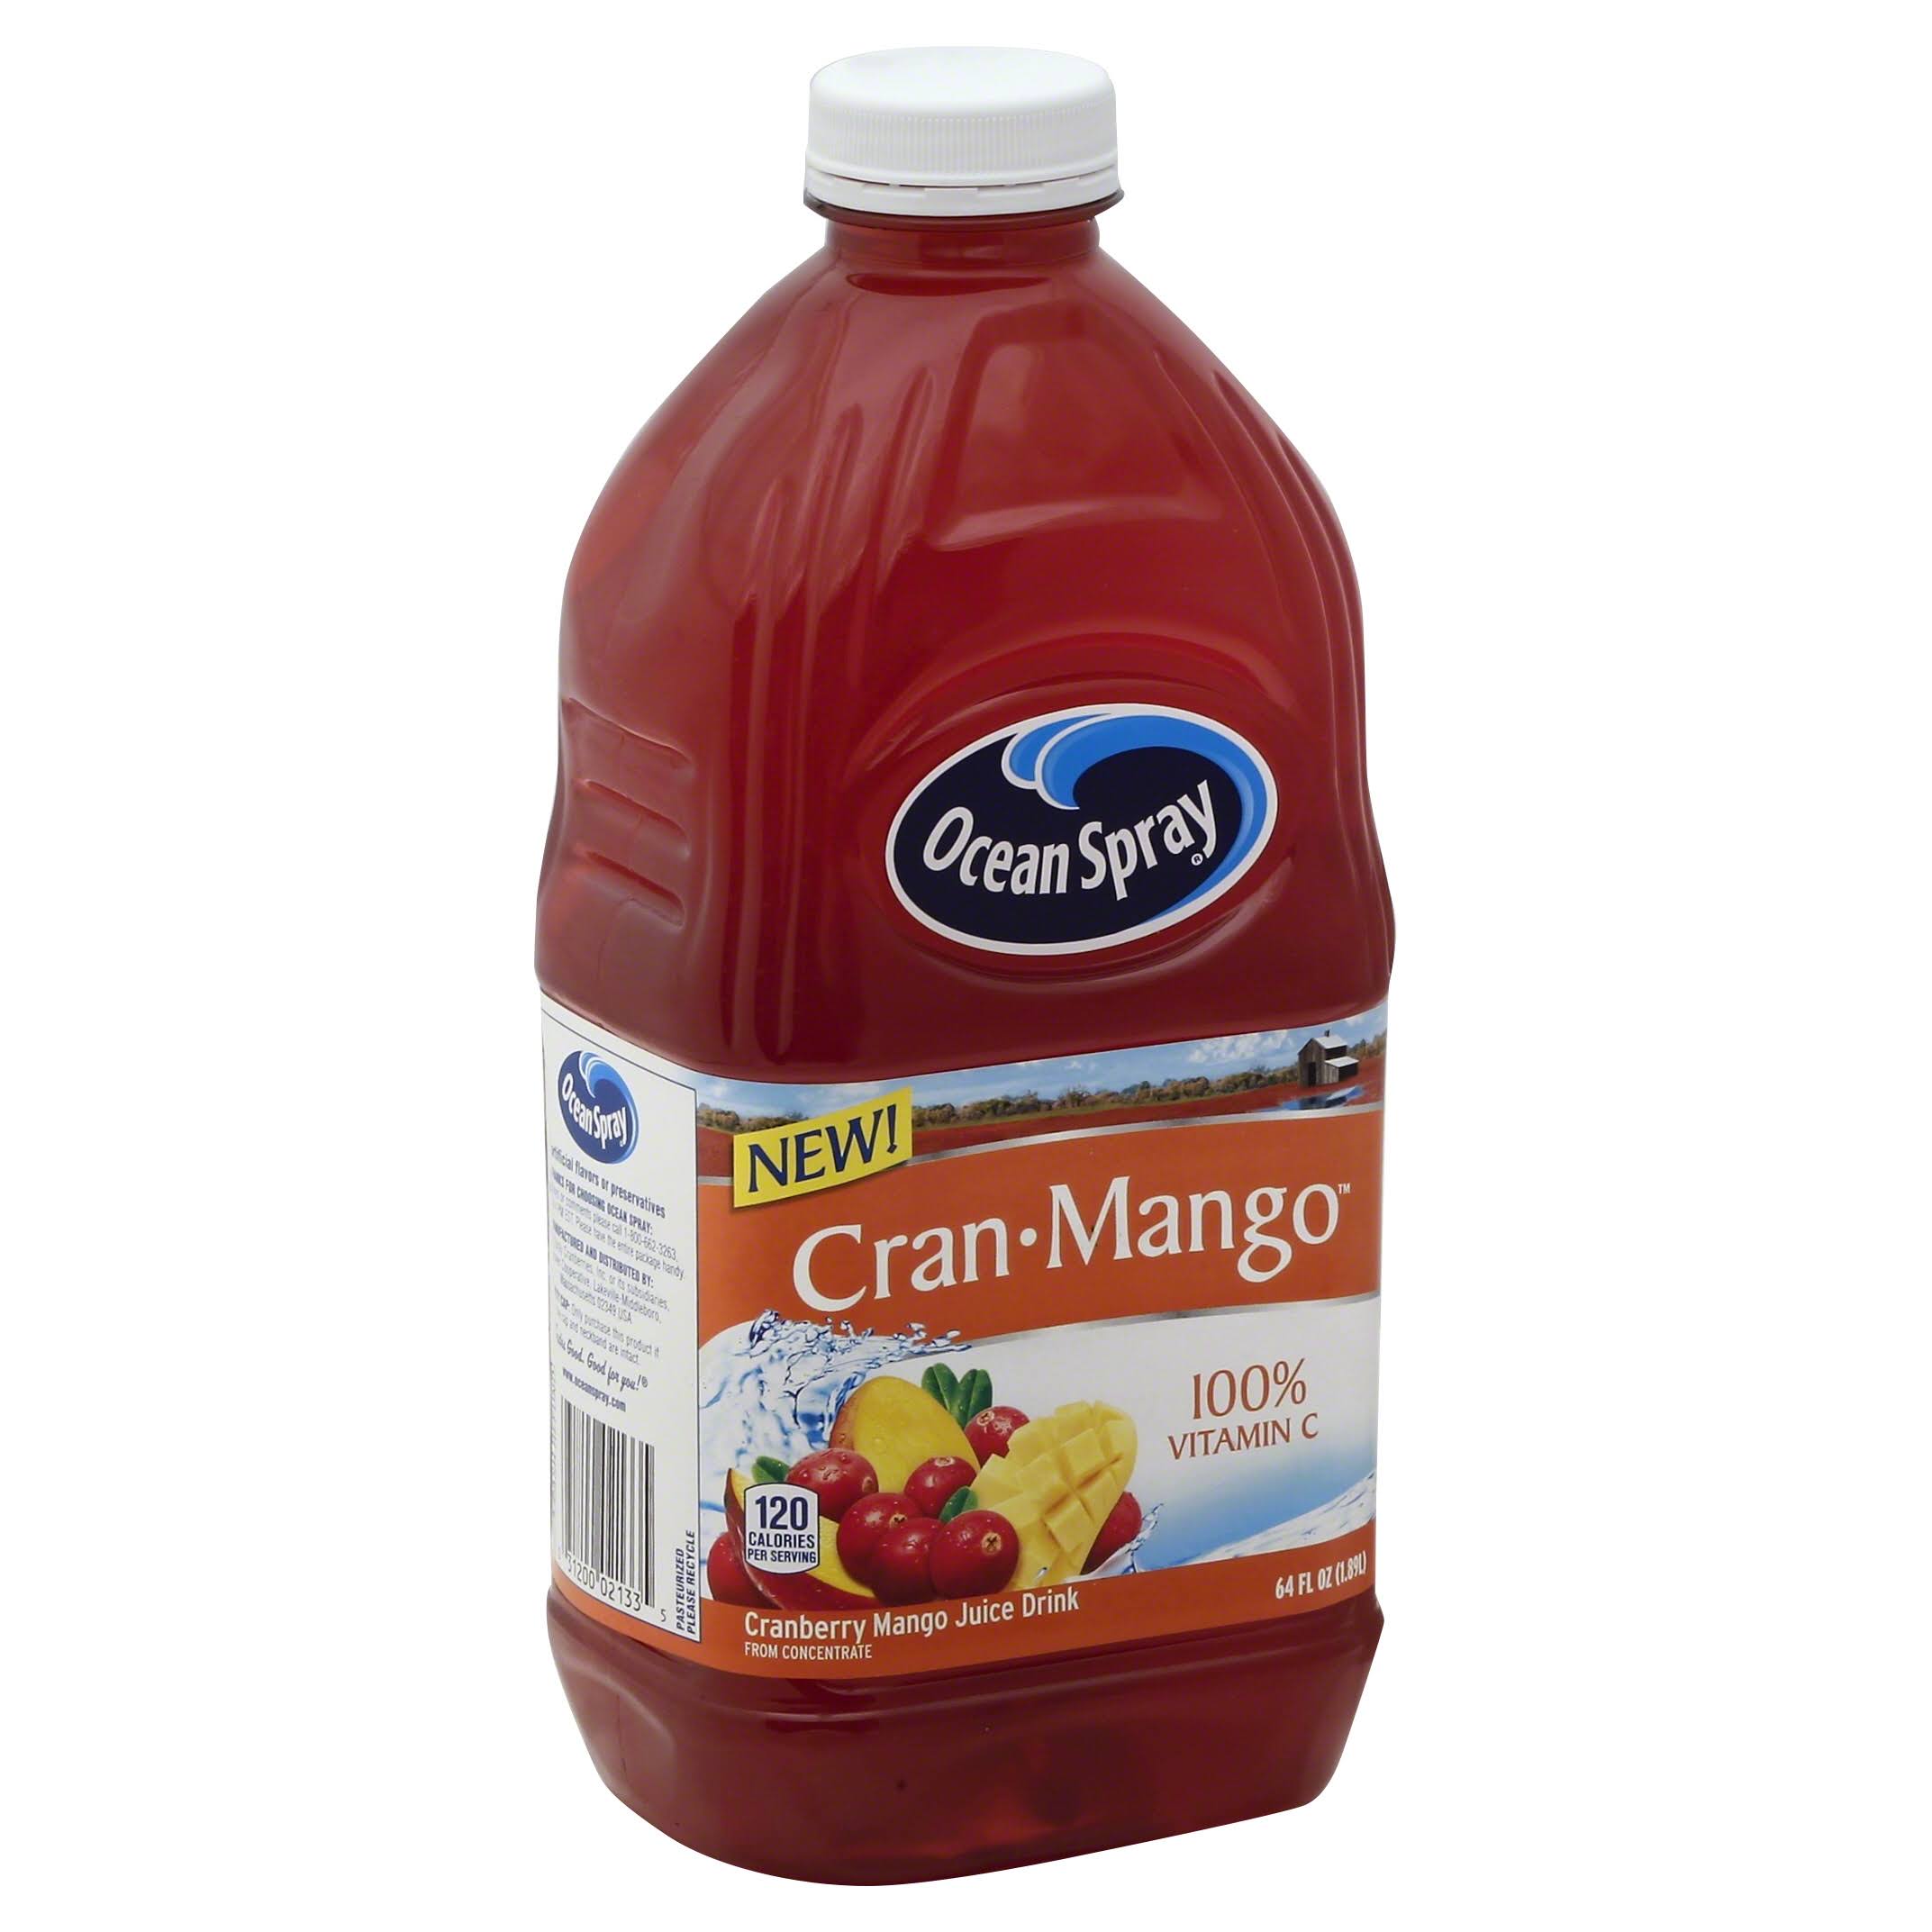 Ocean Spray Cran Mango Juice Drink - 64oz